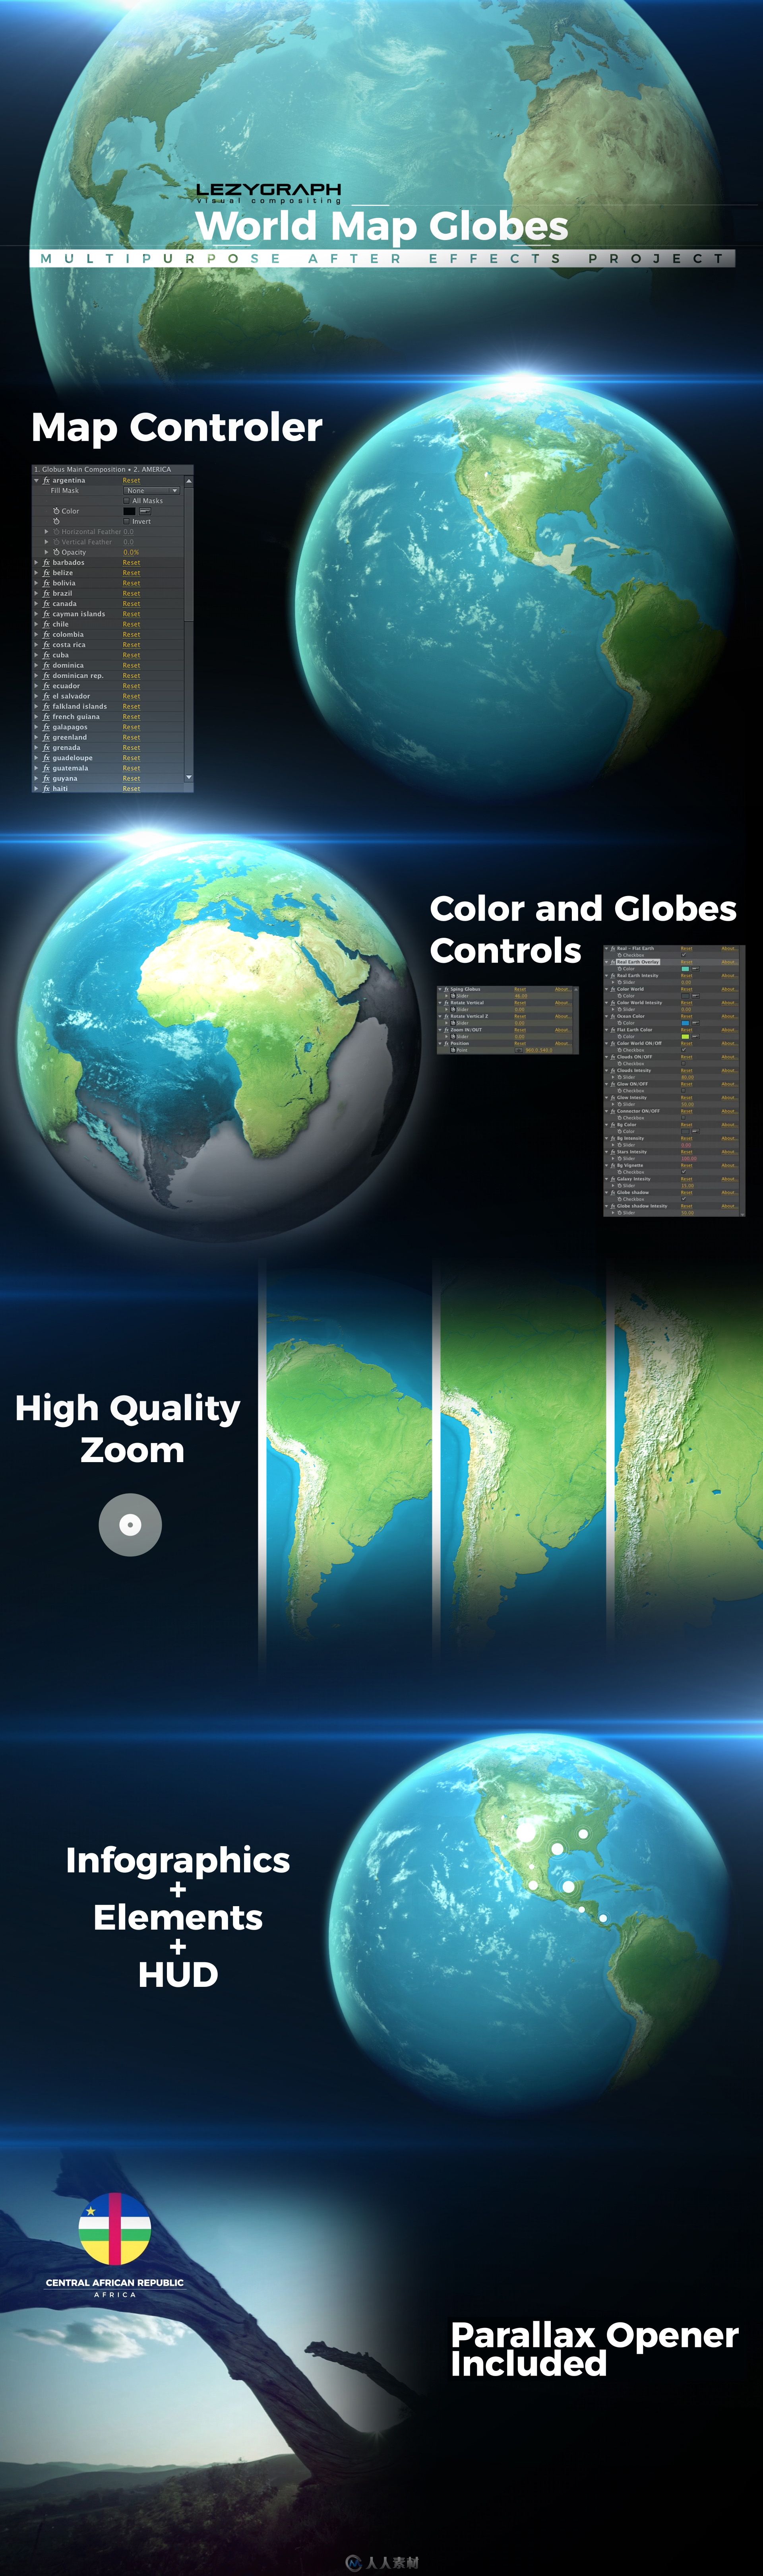 世界地图地球仪工具包特效动画AE模板47 / 作者:相视而笑 / 帖子ID:16740560,4396058